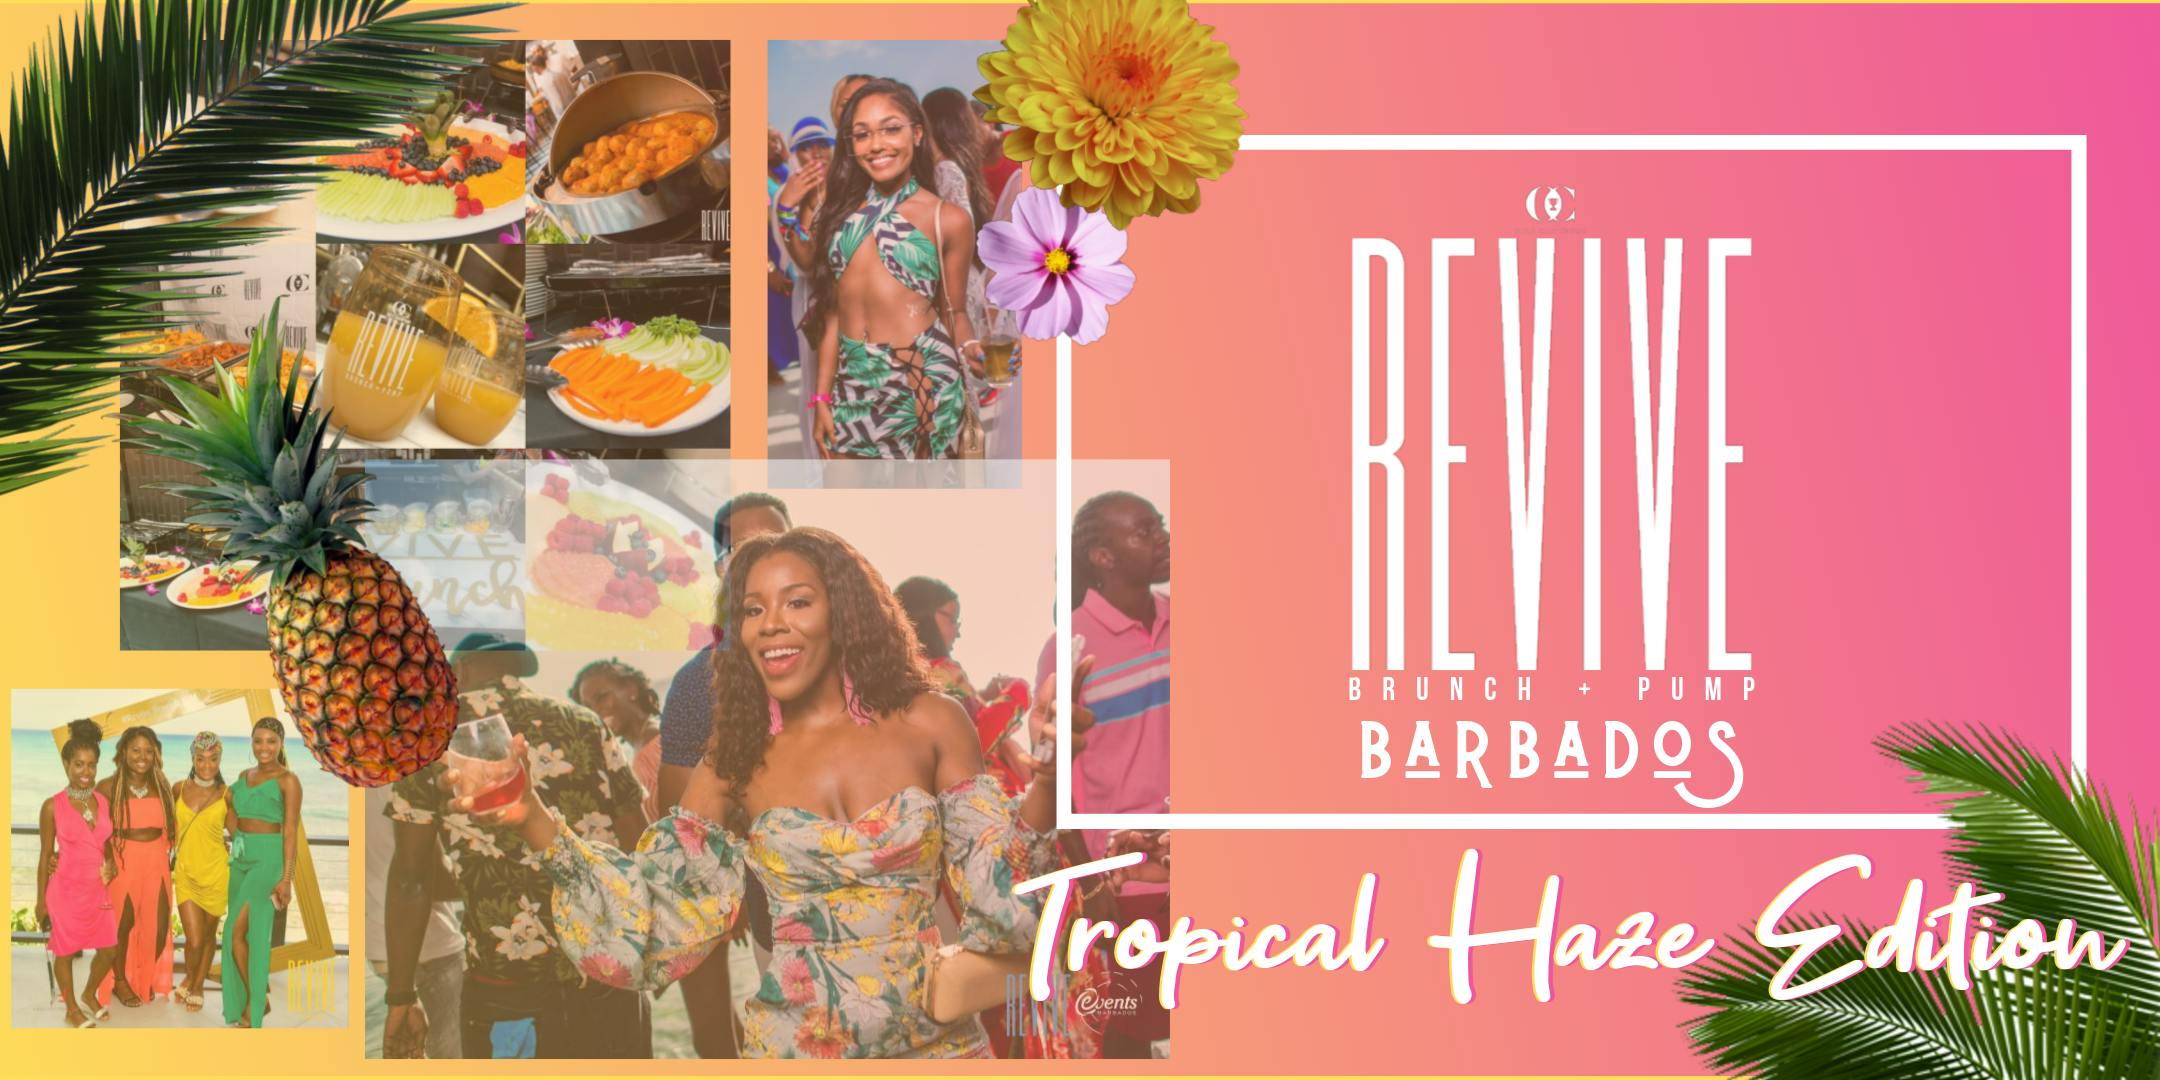 Revive Brunch + Pump : Barbados